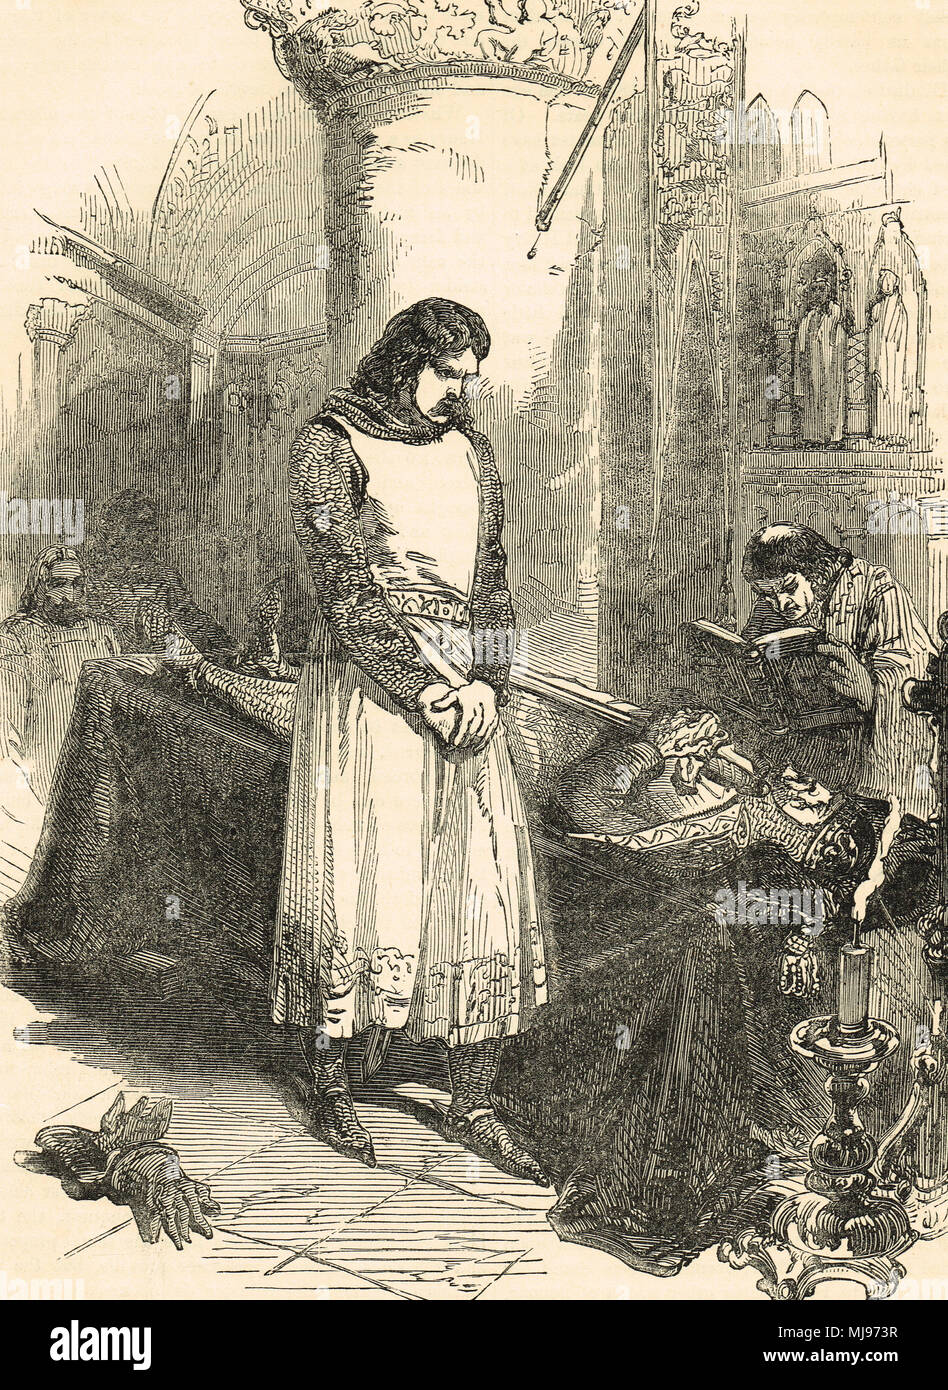 El rey Ricardo I, junto al cadáver de su padre, Enrique II, murió el 6 de julio de 1189, el castillo de Chinon, Anjou, Francia Foto de stock